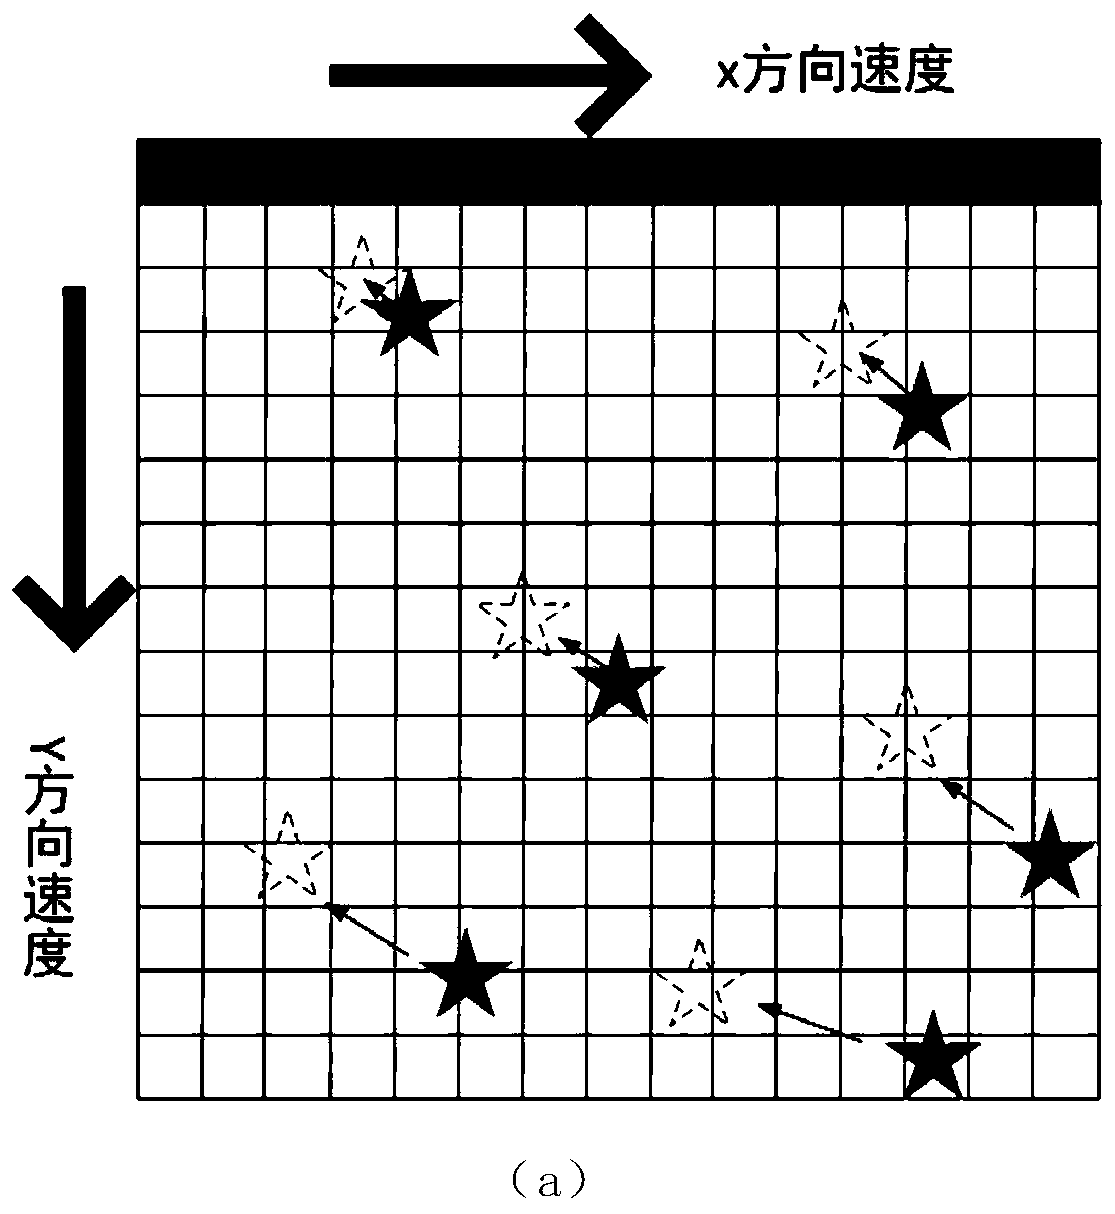 Roller shutter exposure star sensor star point position correction method based on average speed